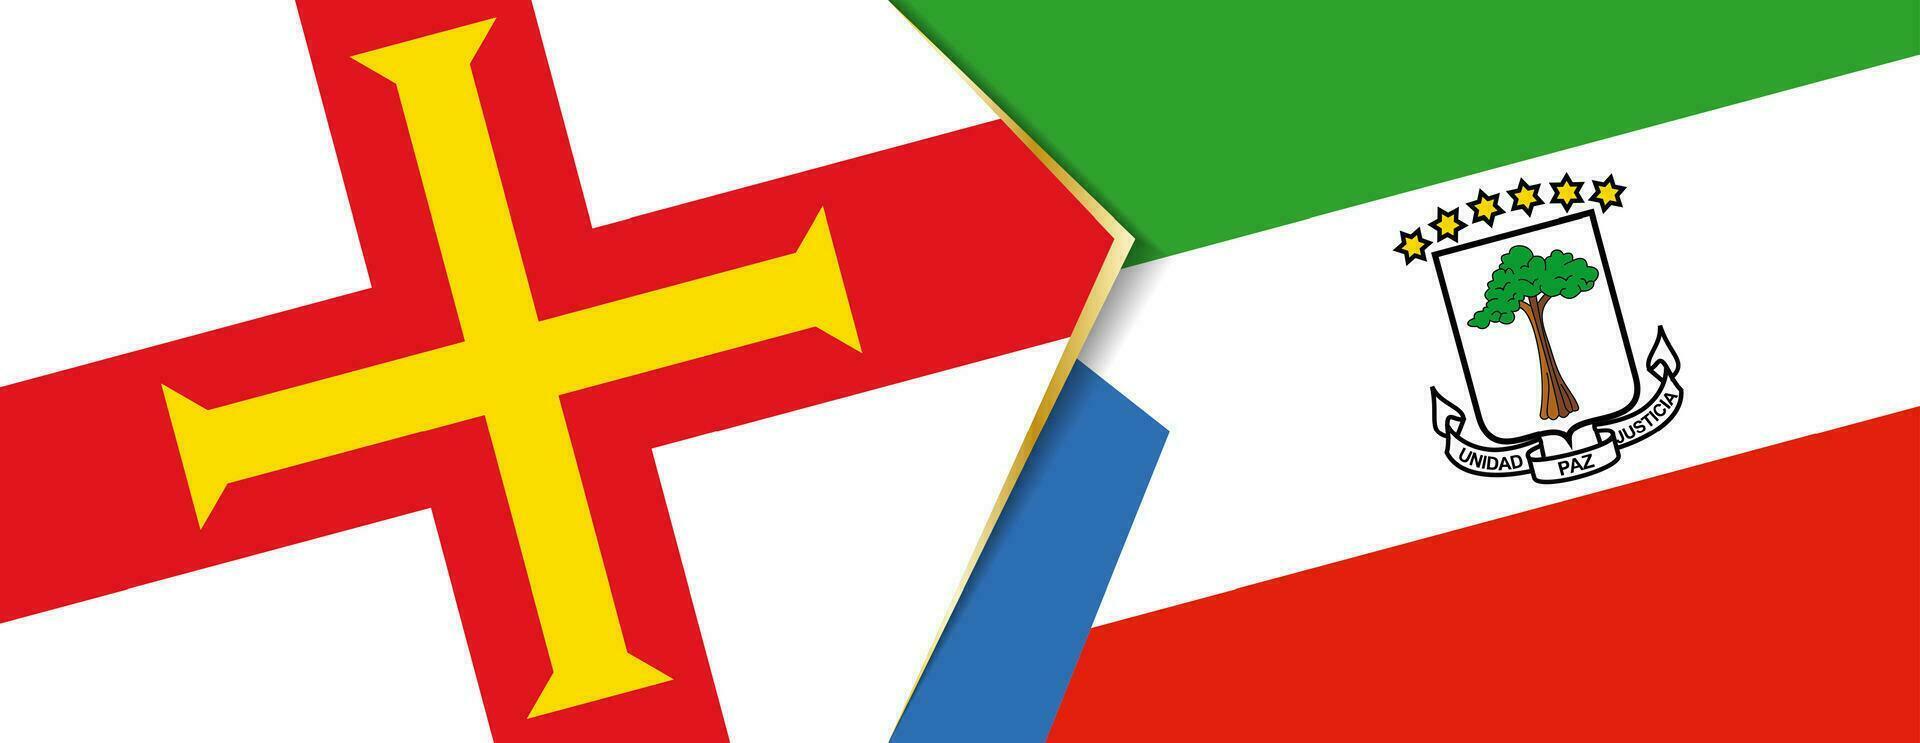 Guernesey et équatorial Guinée drapeaux, deux vecteur drapeaux.